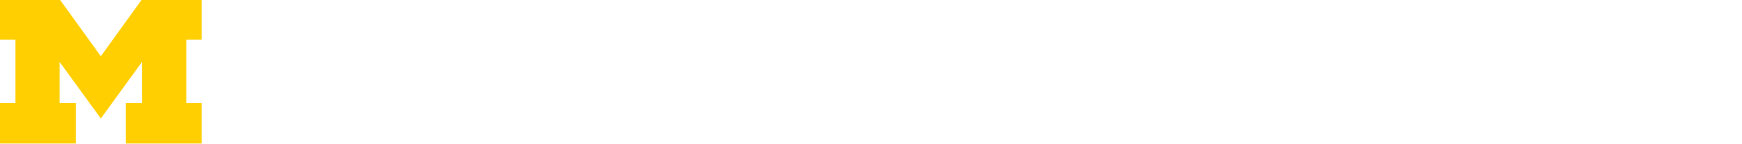 abet process logo